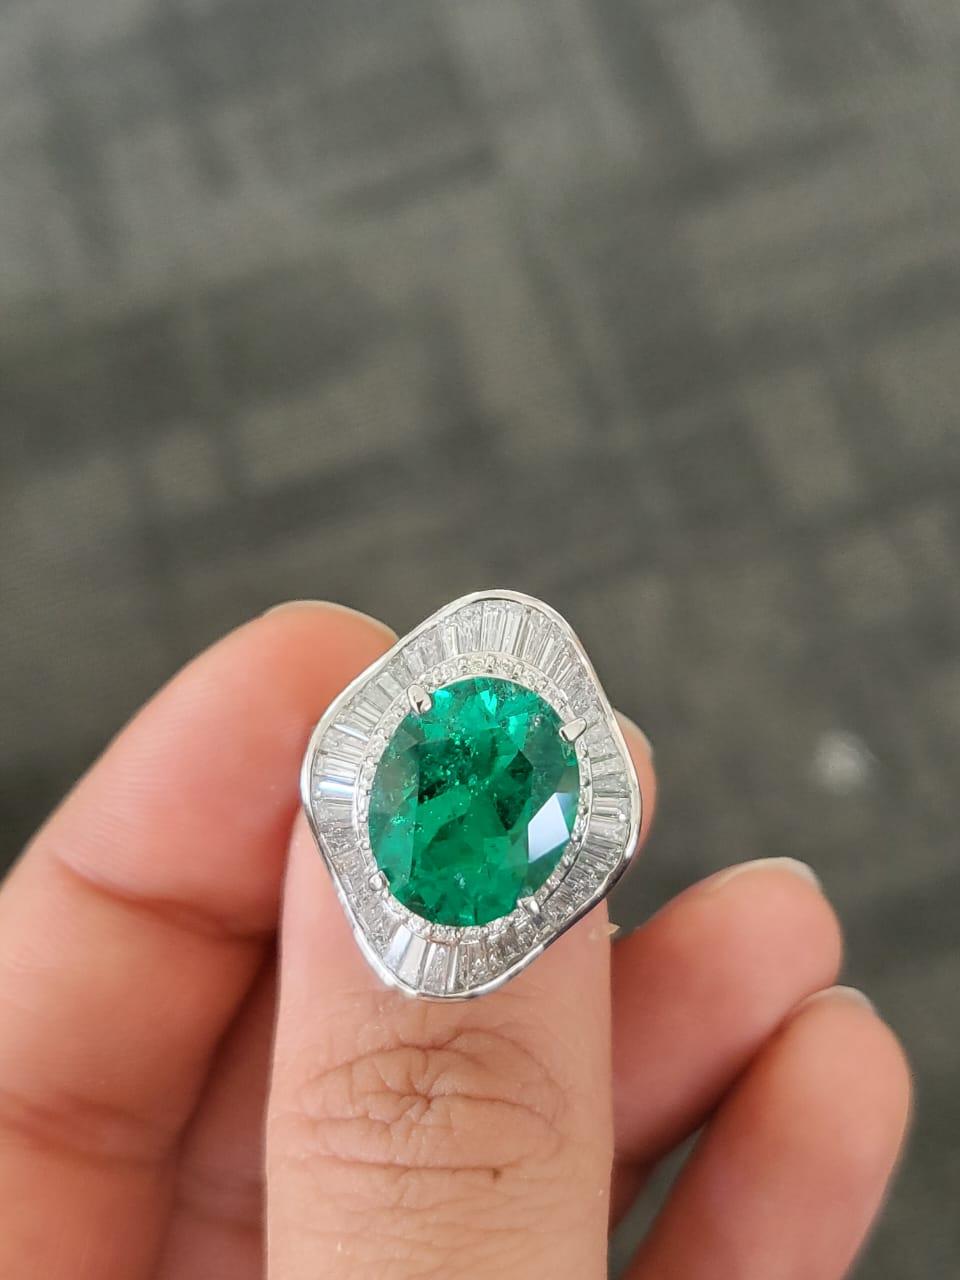 Eine sehr schöne und besondere, kolumbianische Smaragd Verlobung / Cocktail-Ring in PT900 & Diamanten gesetzt. Das Gewicht des ovalen Smaragds beträgt 6,42 Karat. Der Smaragd ist von lebhaft grüner Farbe, mit kleinen oberflächlichen